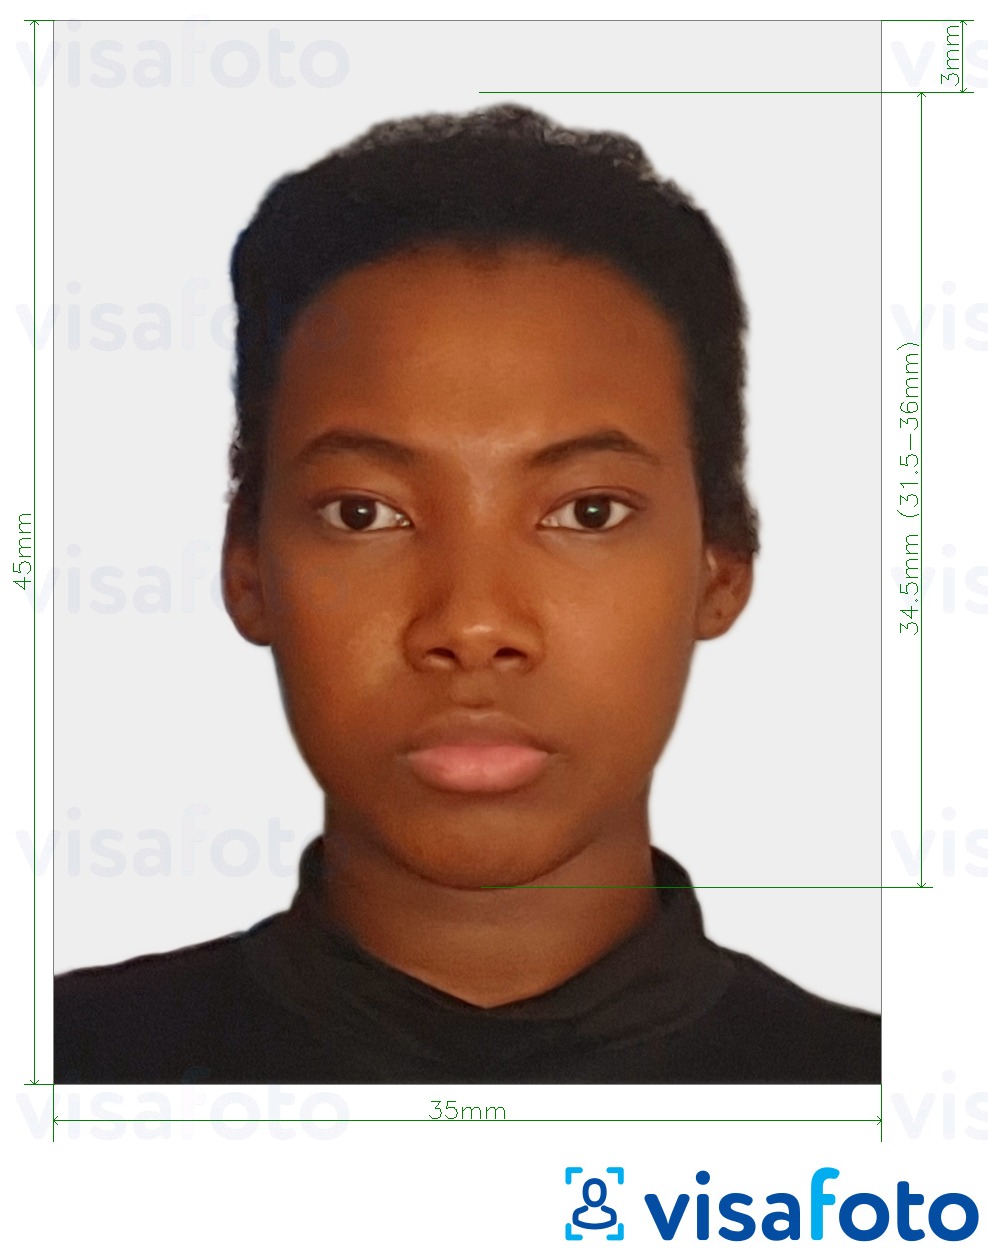 Príklad fotografie pre Surinamské vízum 45x35 mm (1.77x1.37 palca) s presnou špecifikáciou veľkosti